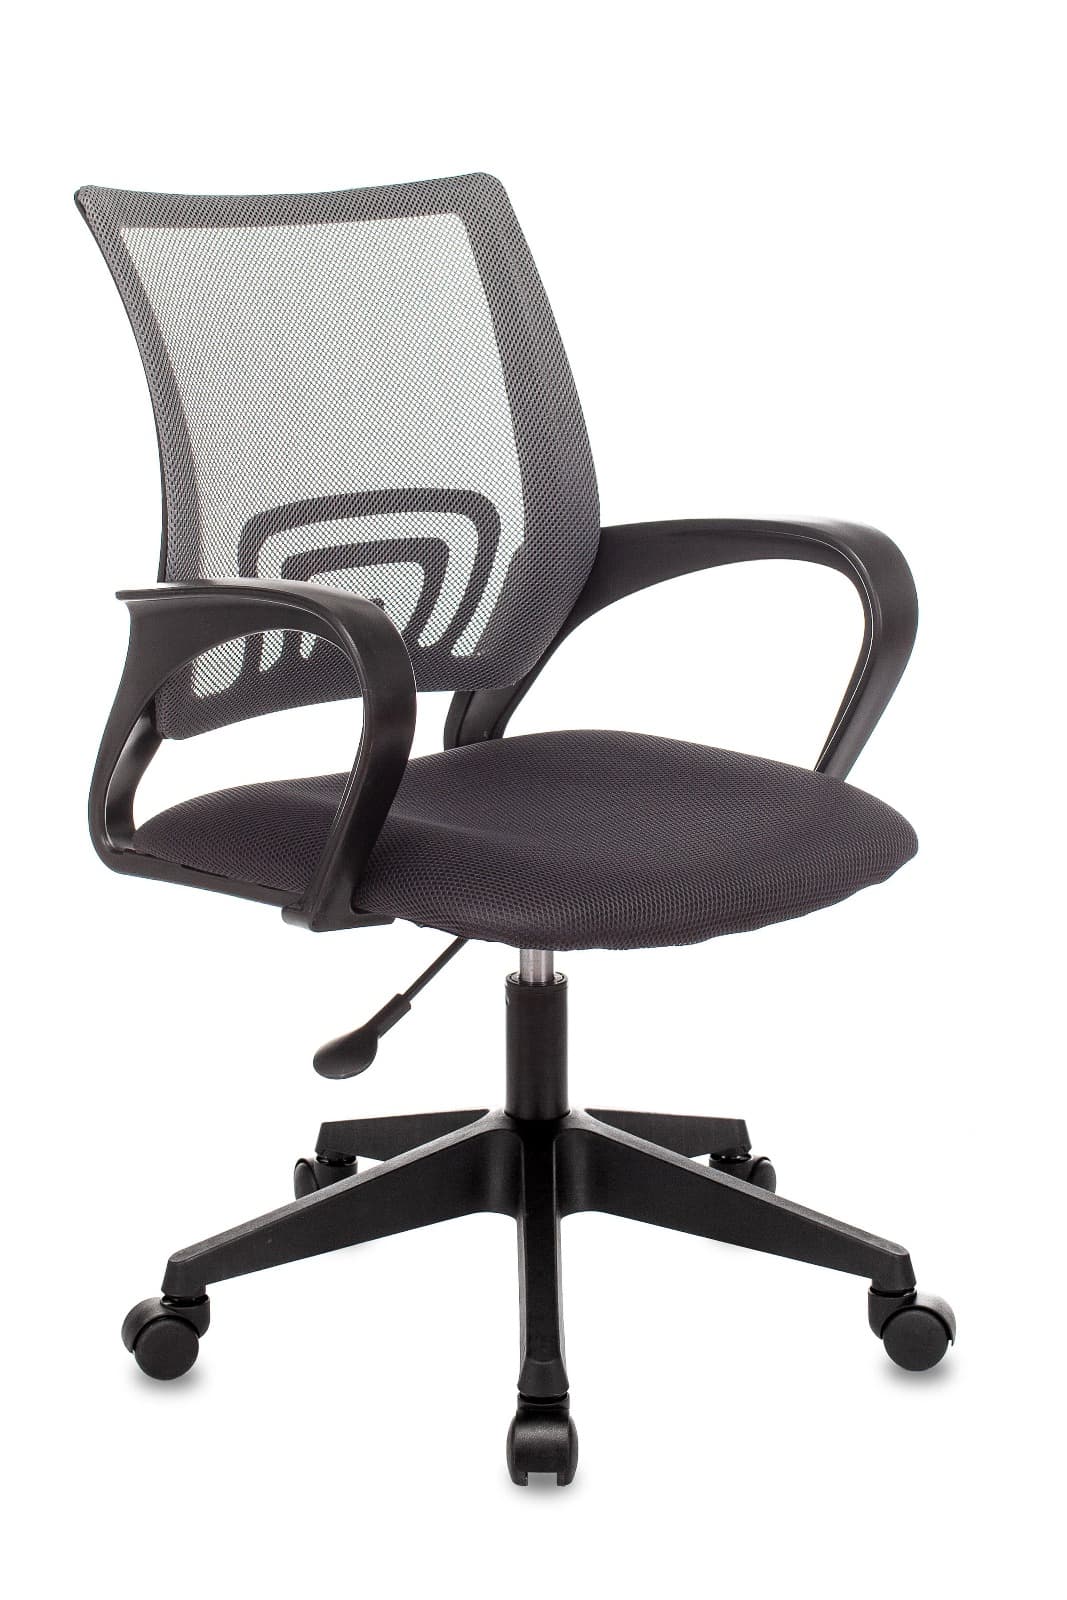 Компьютерное кресло ST-Basic офисное сетка/ткань серый крестовина пластик механизм Пиастра